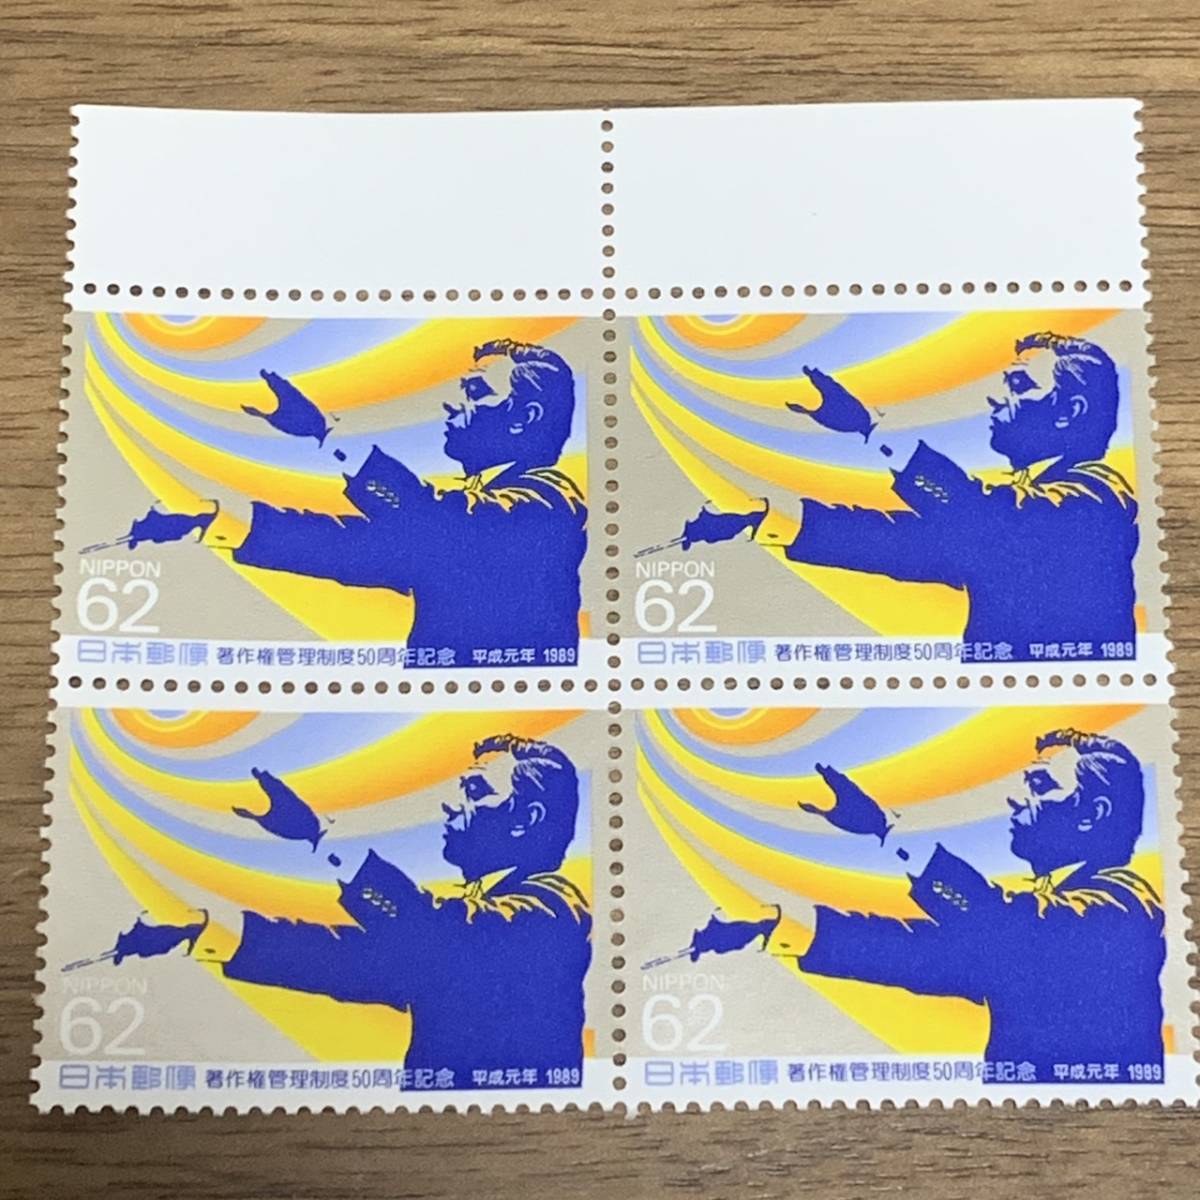 記念切手 著作権管理制度50周年記念 指揮者と光のイメージ 1989年 (平成元年) 62円×4枚 額面248円 同封可能 M424の画像1